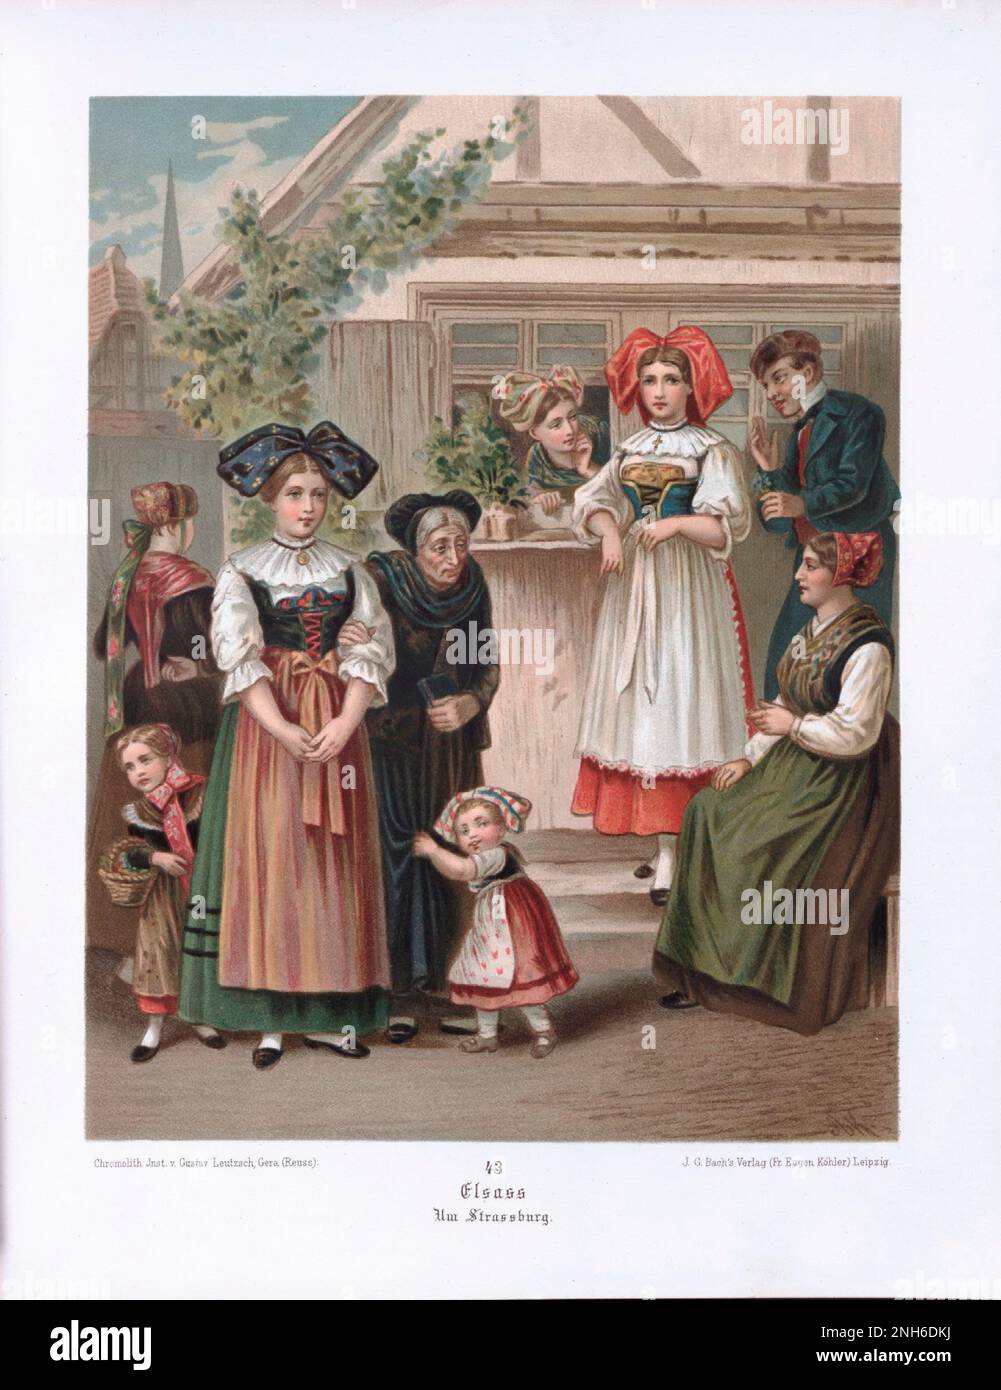 Disfraz folclórico alemán. Alsacia (alemán: Elsass). litografía del siglo 19th. Foto de stock